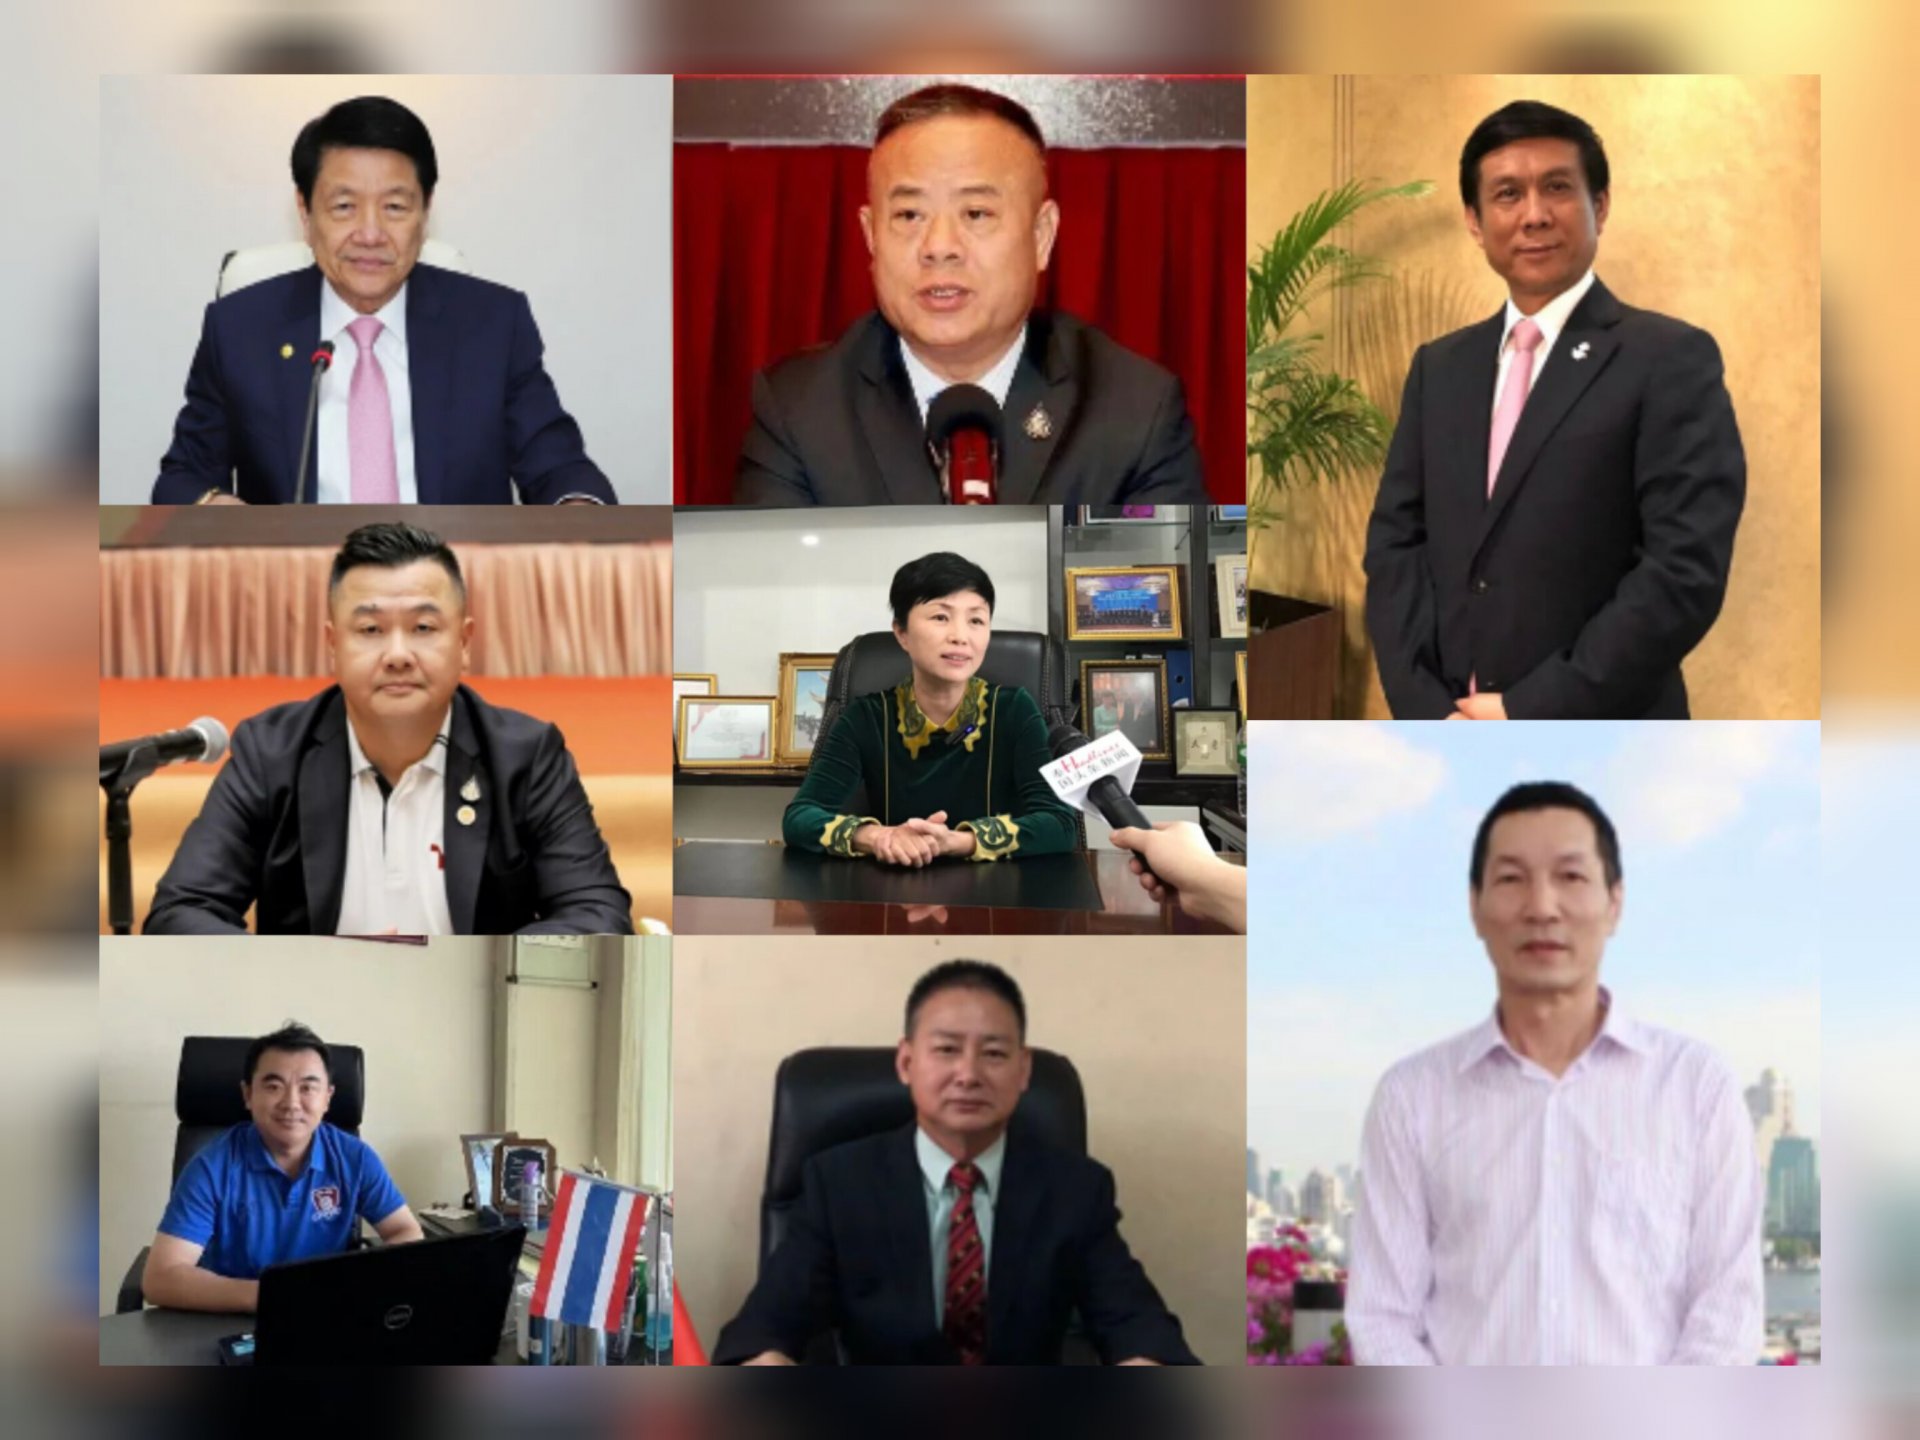 การสัมภาษณ์ผู้นำของกลุ่มคนจีนในการประชุมสุดยอดผู้นำภาคเอกชนของ APEC